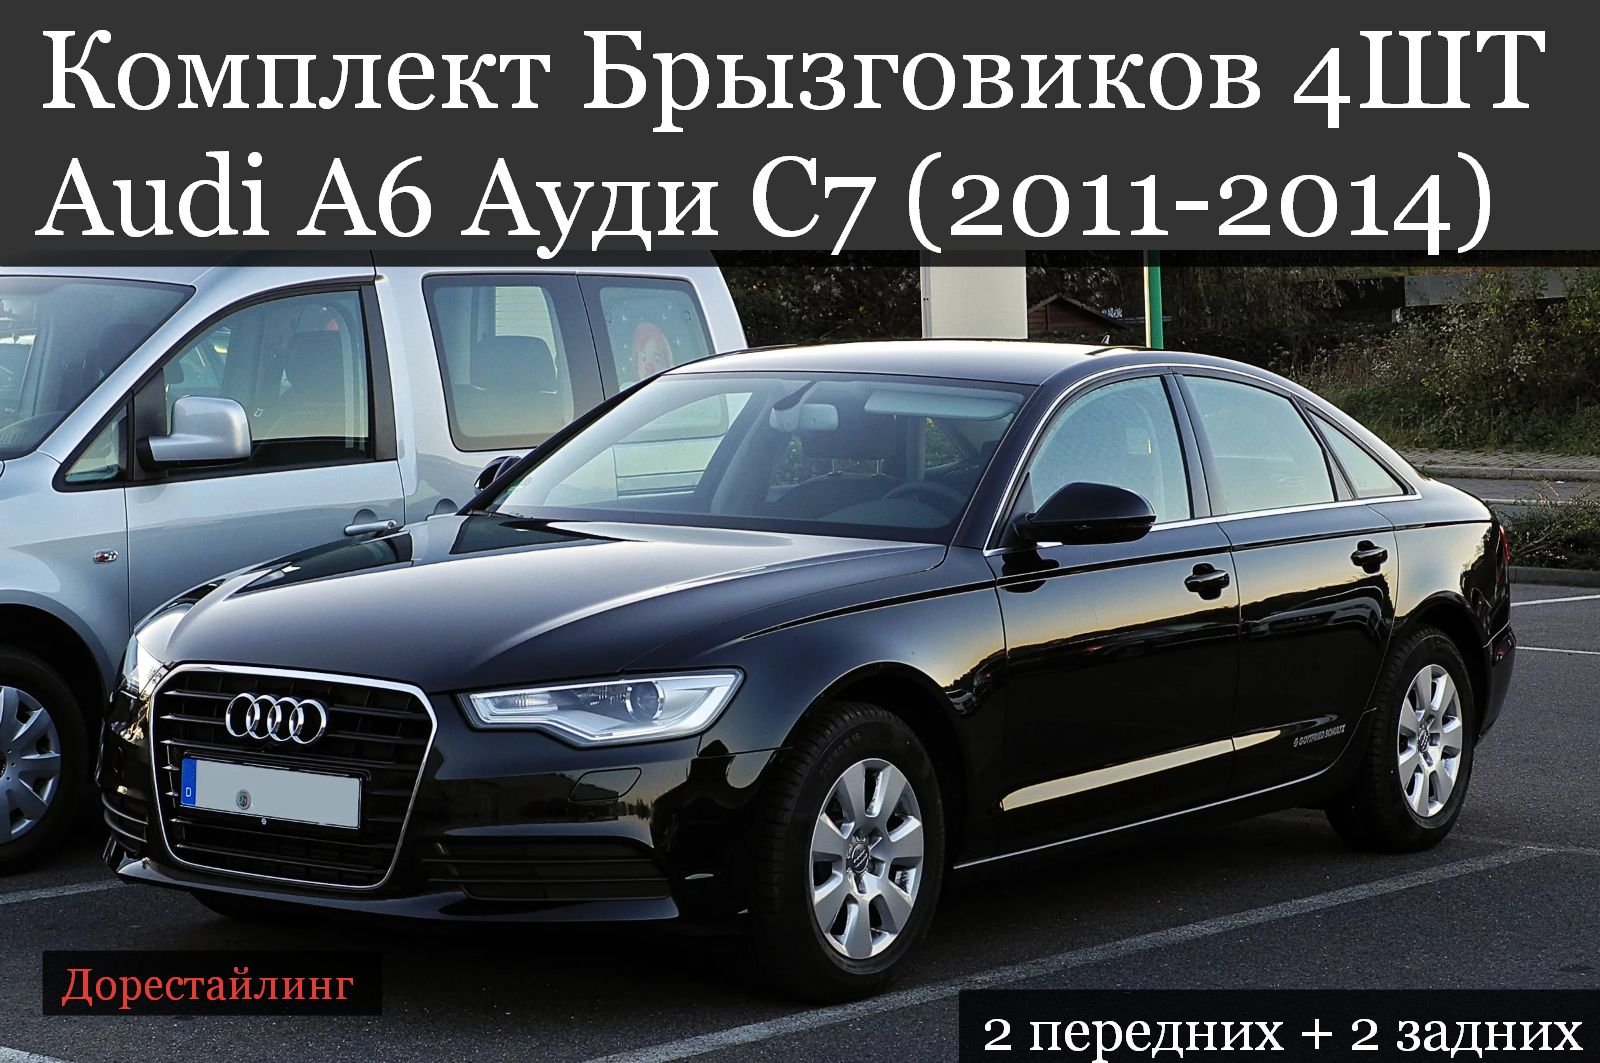 Купить а6 в россии. Audi a6 2011. Ауди а6 2011. Audi a6 c7. Audi a6 c6 2011.